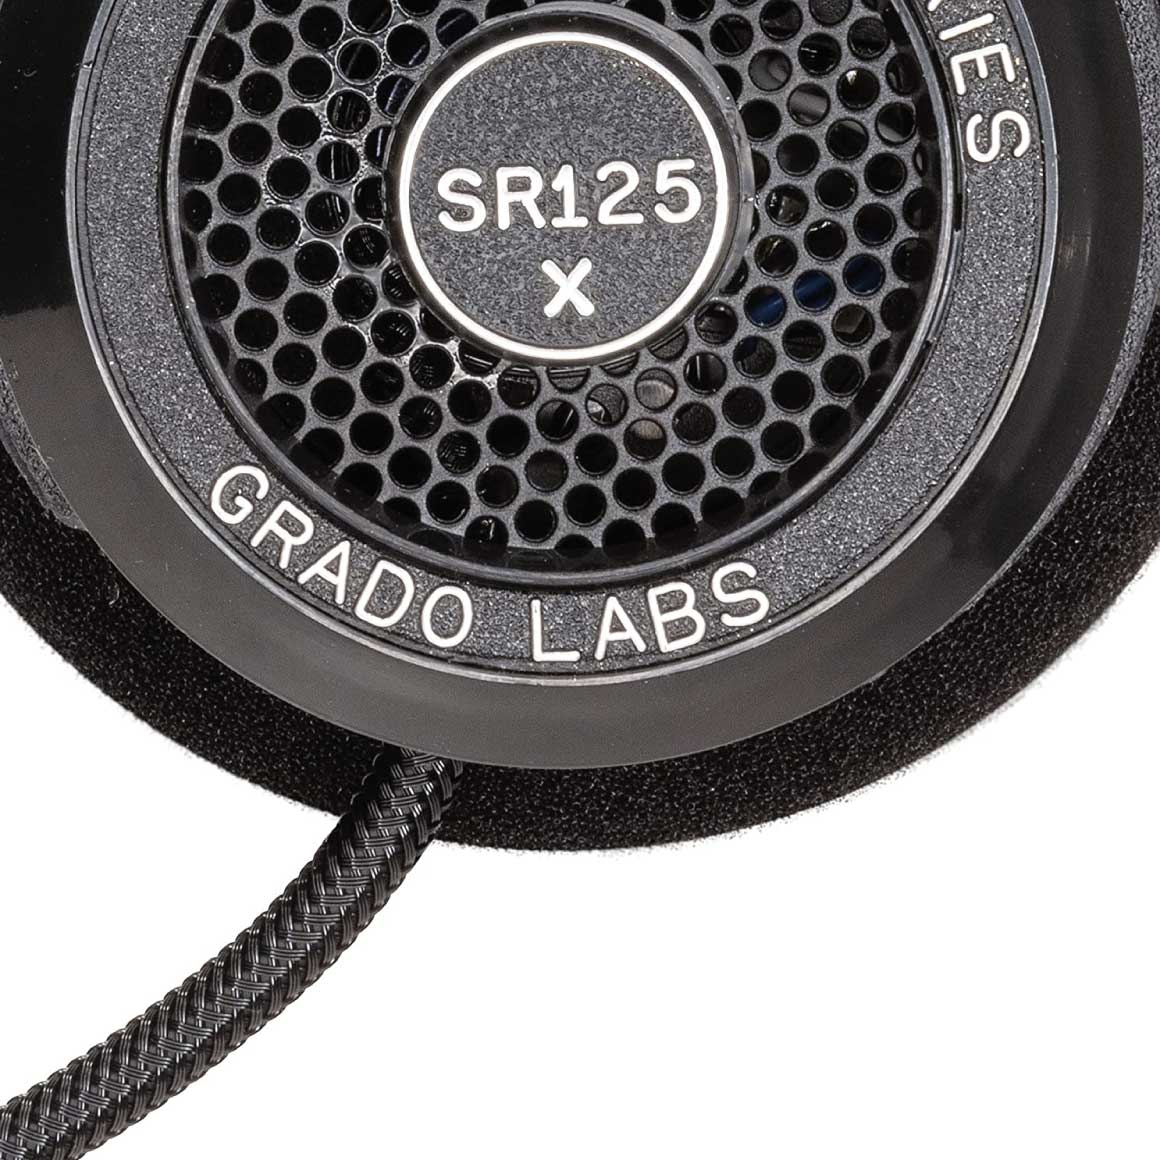 Headphone-Zone-Grado-SR125x